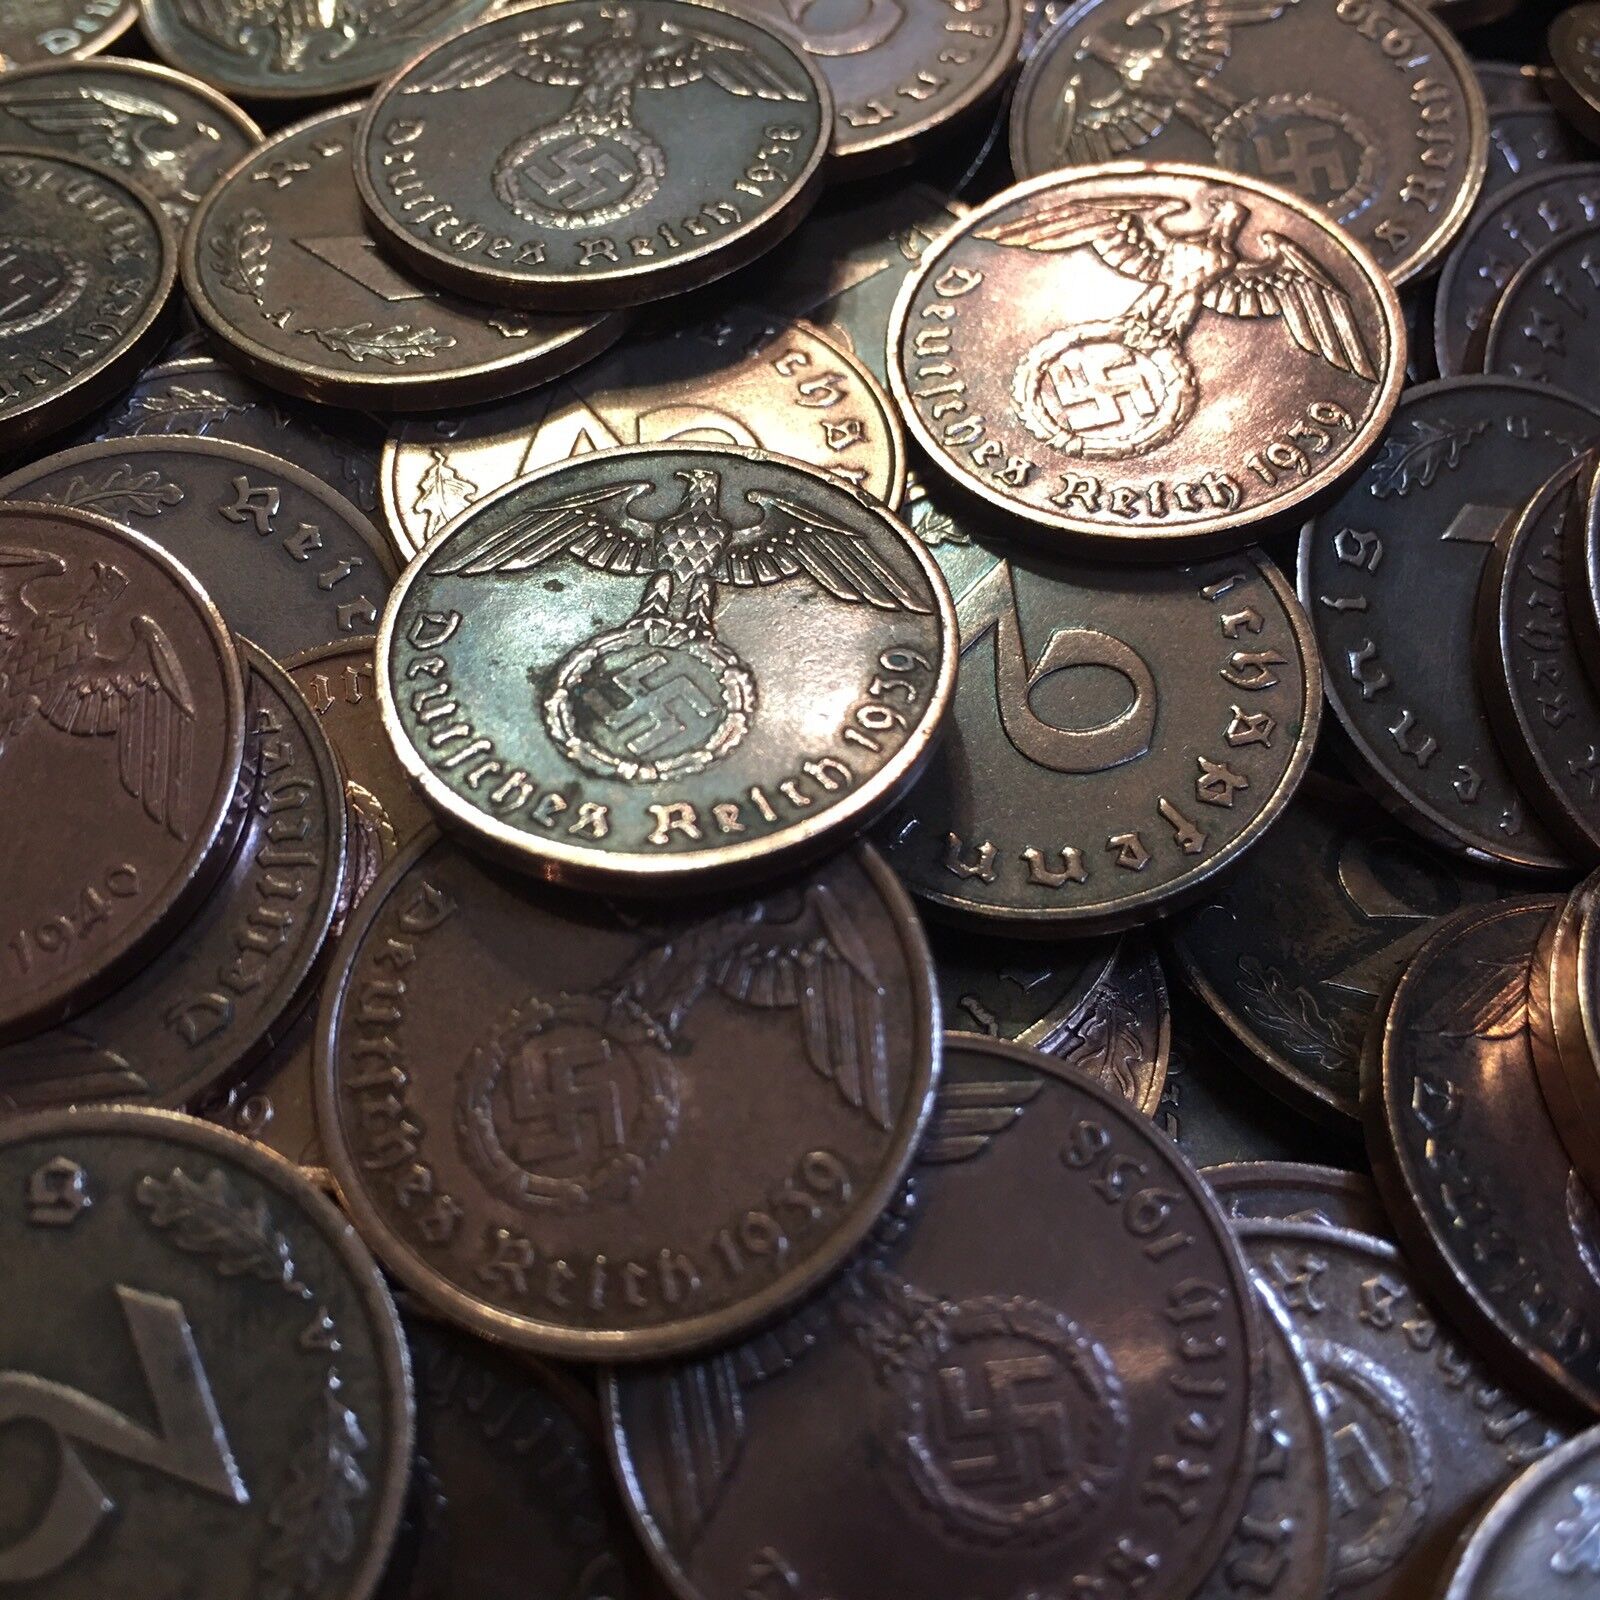 Rare WW2 German 2 RP Reichspfennig 3rd Reich Bronze Nazi Coin Buy 3 Get 1 Free Без бренда - фотография #11